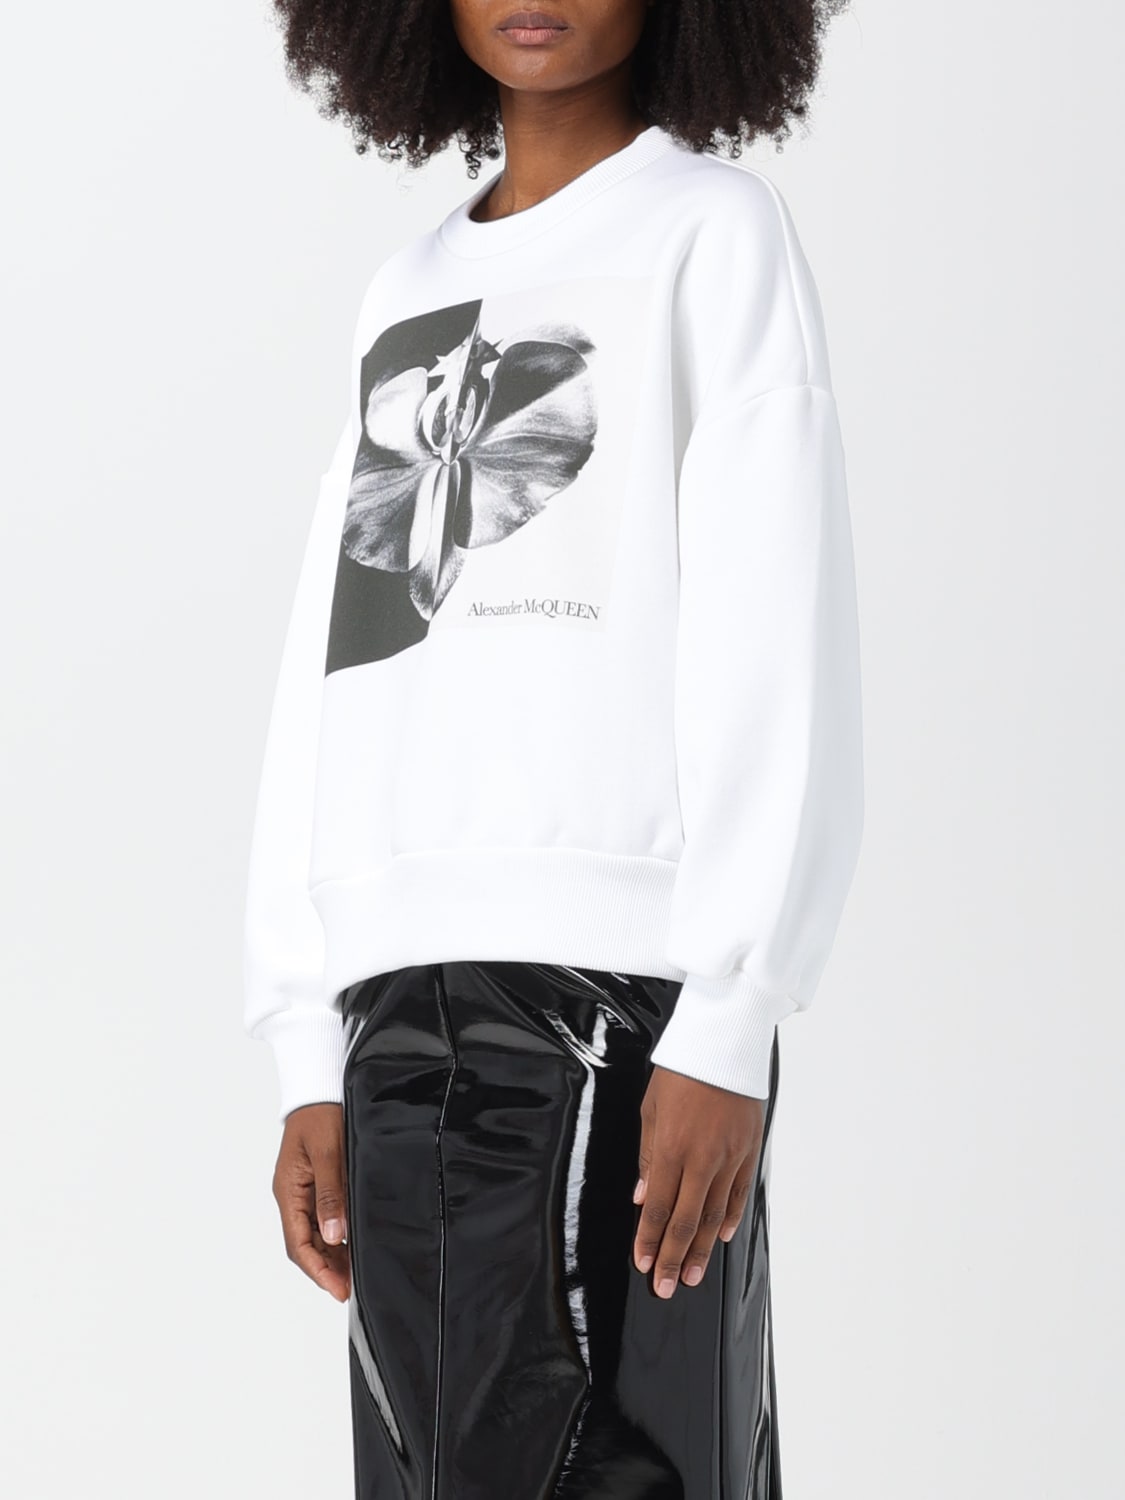 ALEXANDER MCQUEEN - Sweatshirt With Print